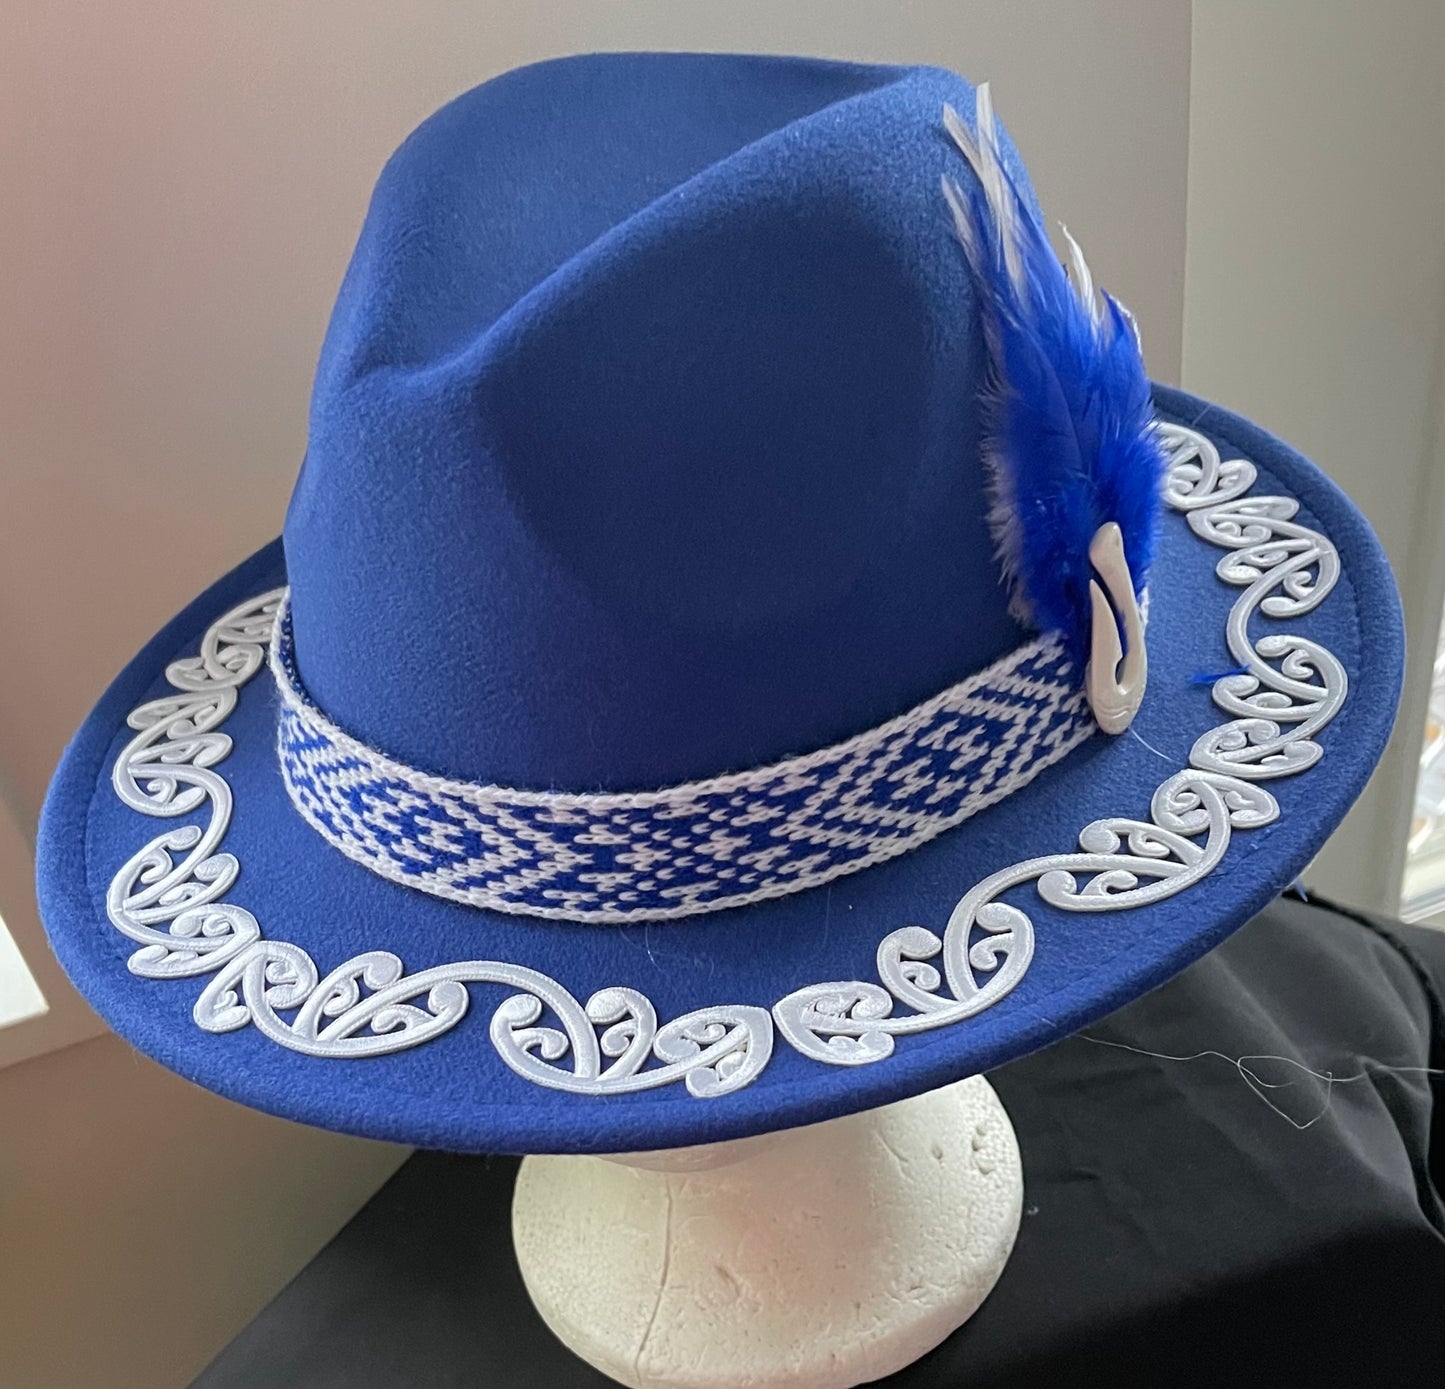 Potae - Royal Blue Fedora Felt Hat